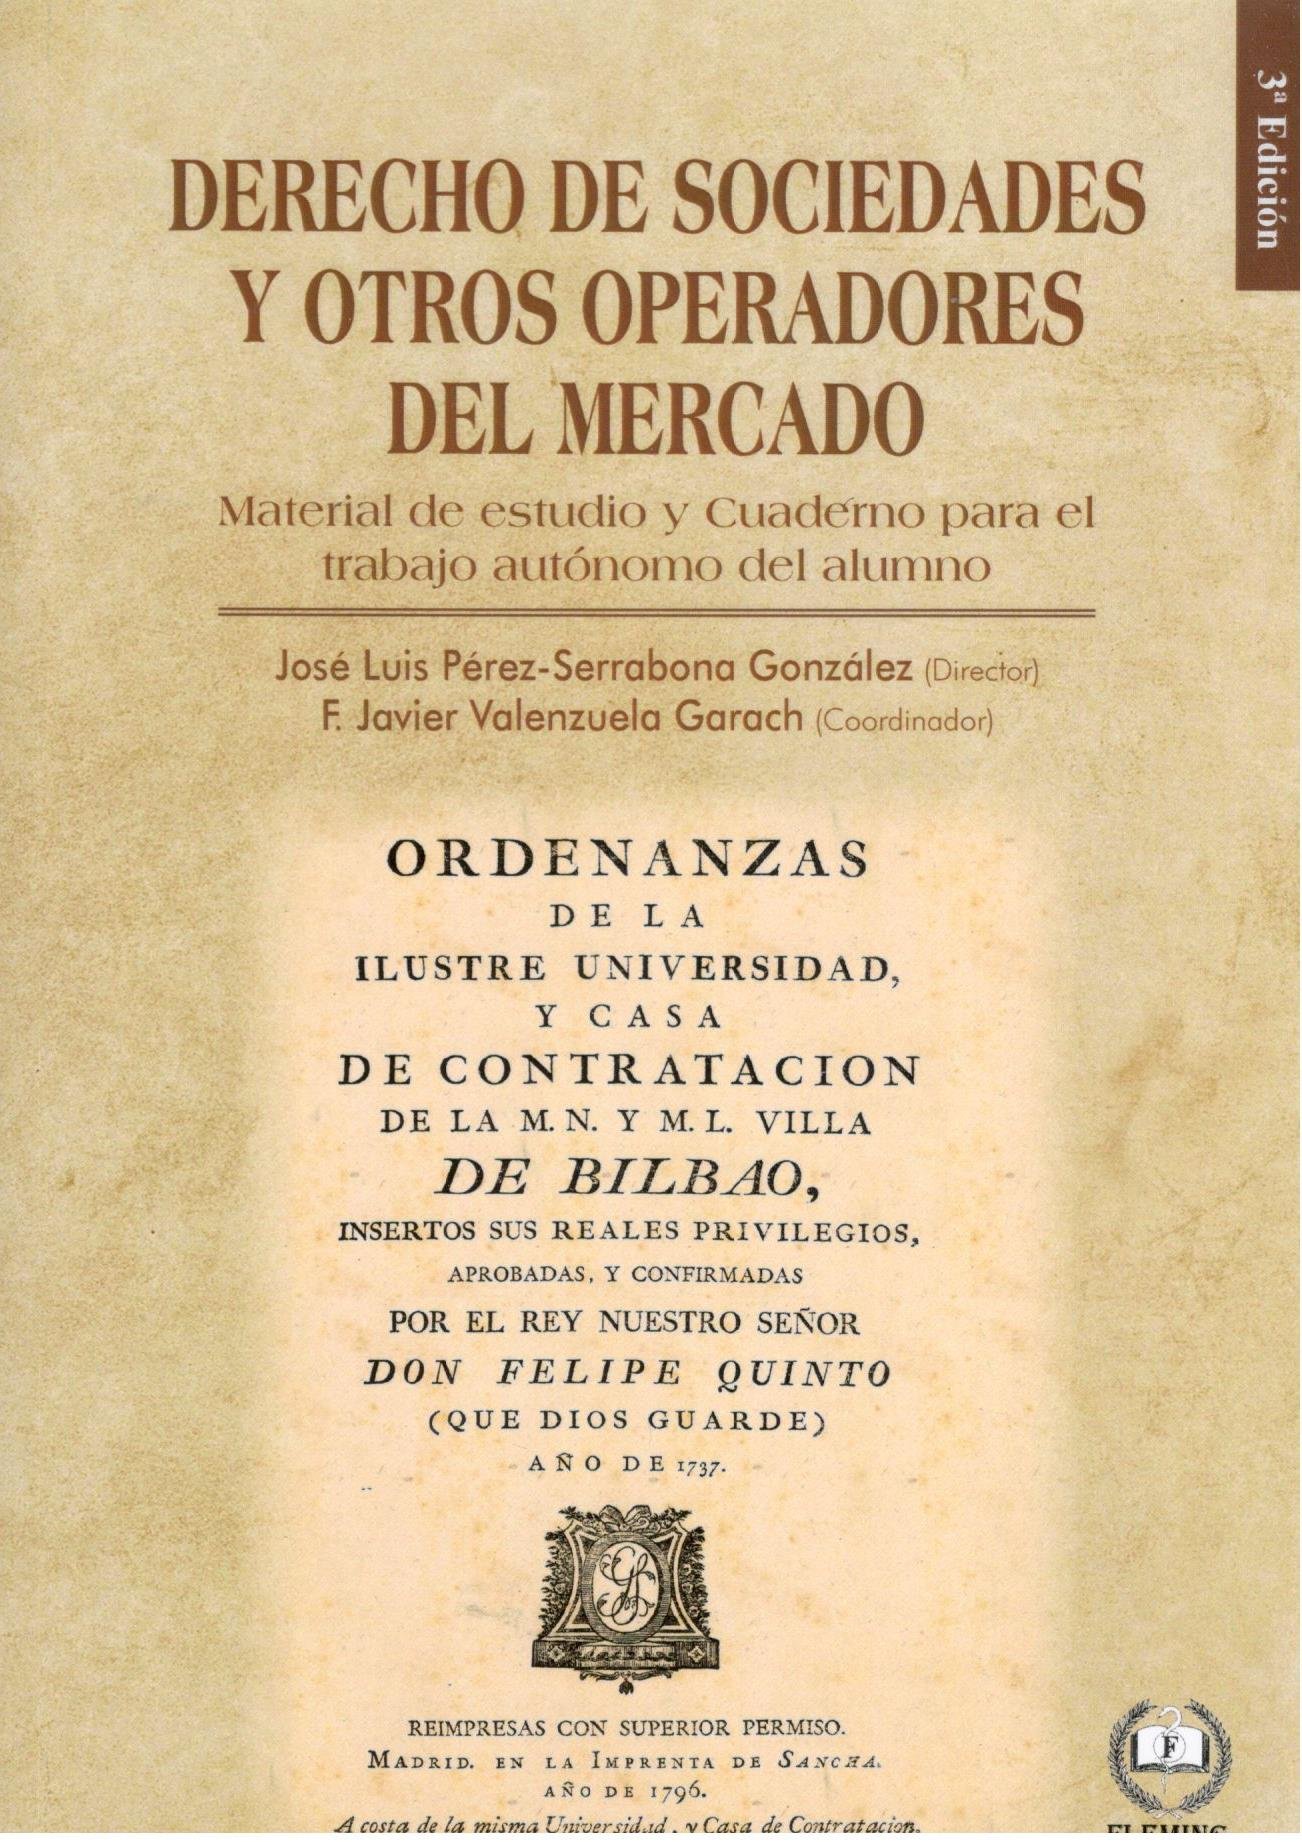 Imagen de portada del libro Derecho de sociedades y otros operadores del mercado